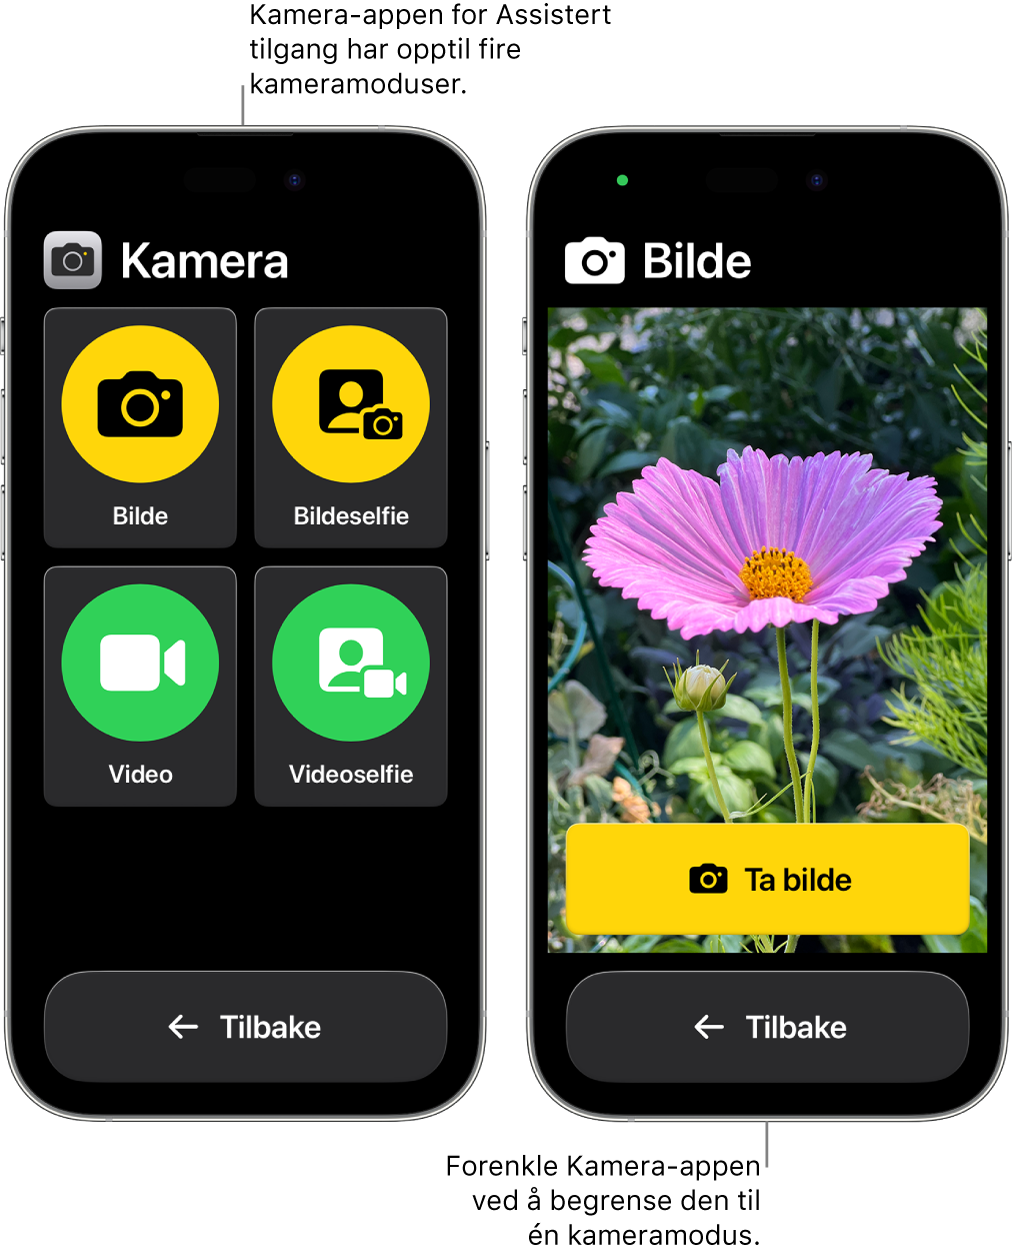 To iPhoner i Assistert tilgang. Den ene iPhonen viser Kamera-appen med kameramoduser som brukere kan velge mellom, som Video- eller Bildeselfie. Den andre iPhonen viser Kamera-appen med én modus for å ta bilder.